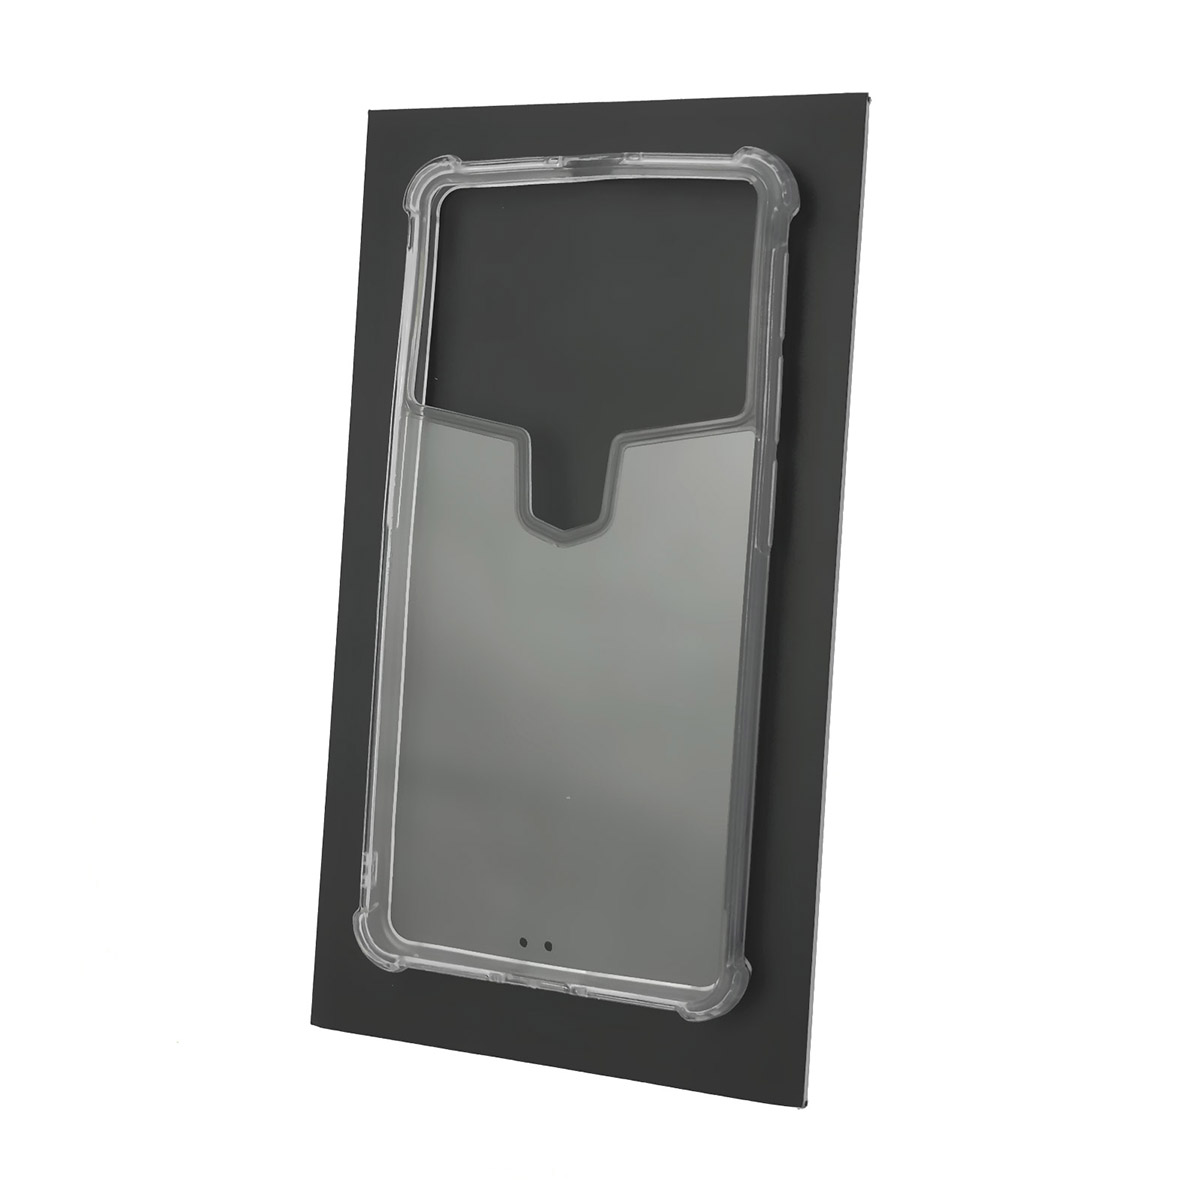 Чехол накладка универсальная TPU CASE для смартфонов размером 5.3 - 5.6, N2+, силикон, цвет прозрачный.